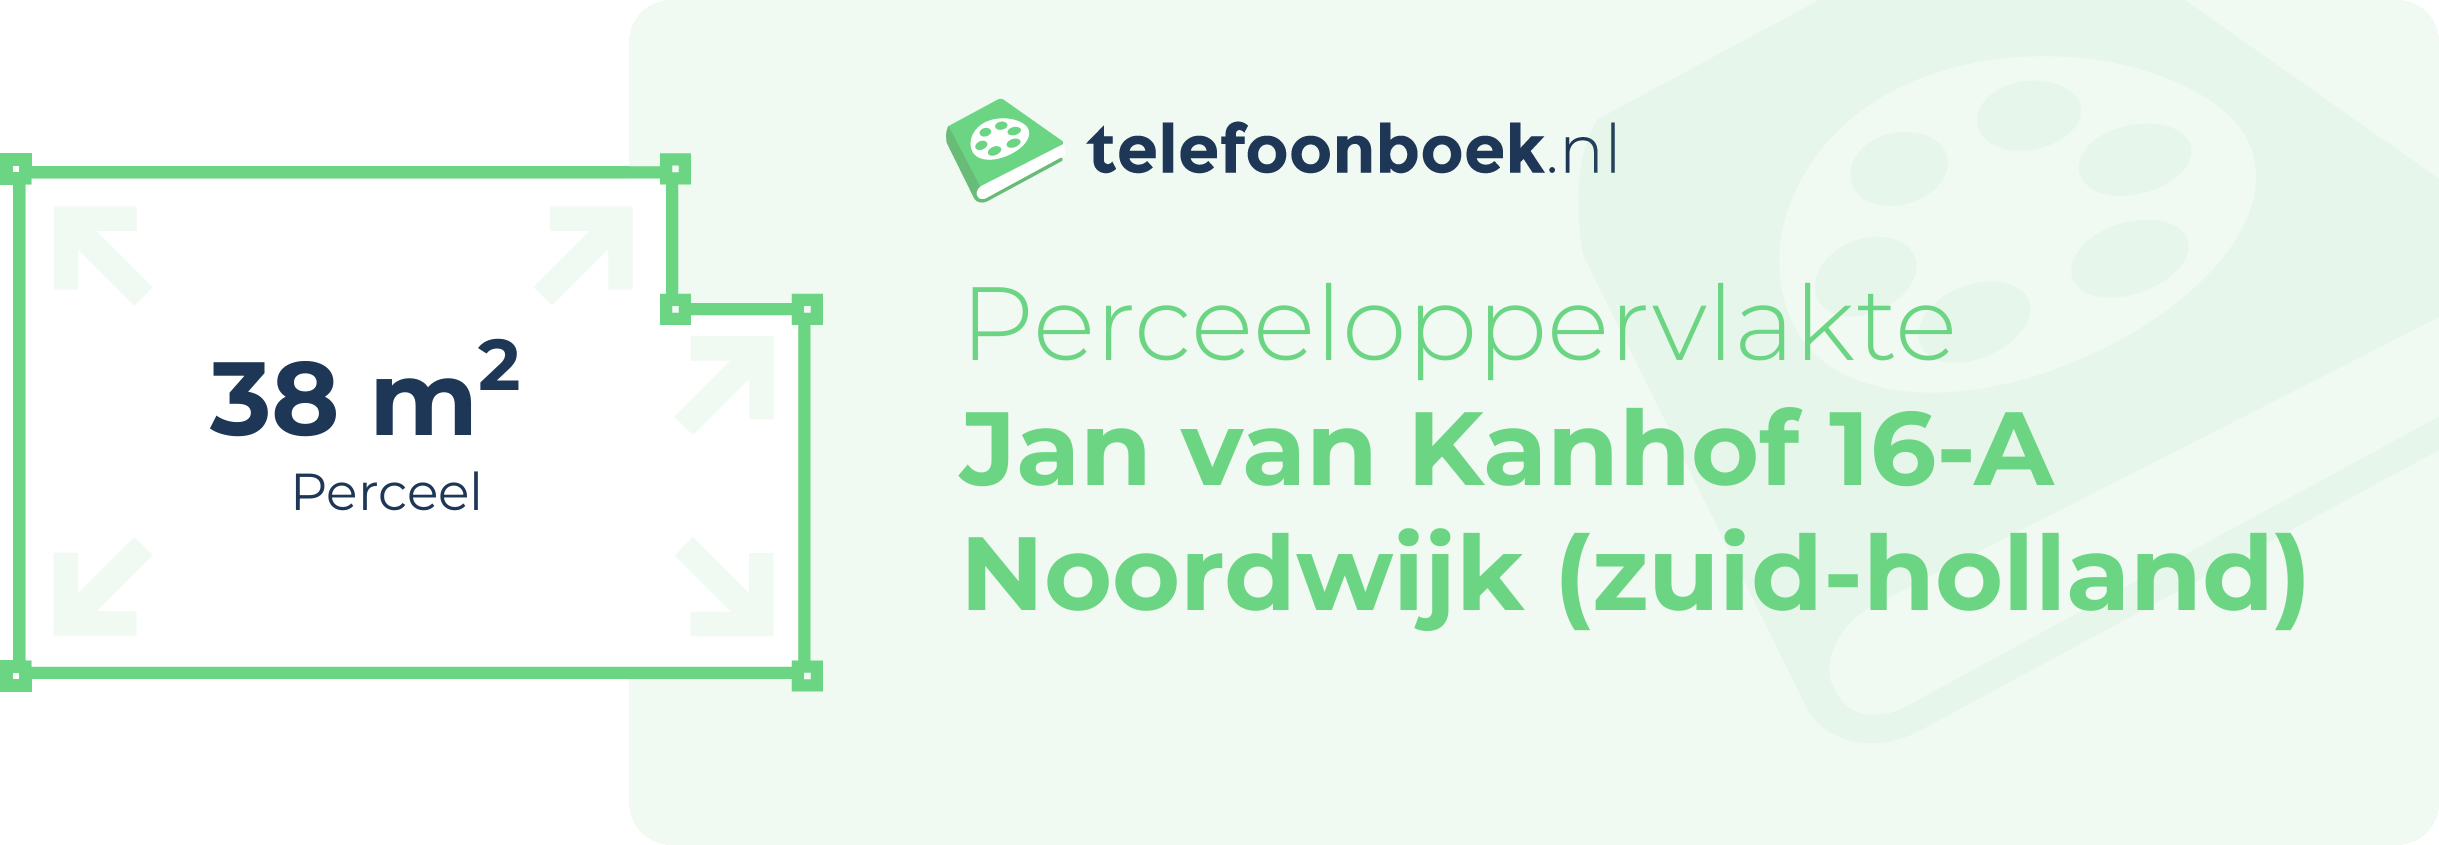 Perceeloppervlakte Jan Van Kanhof 16-A Noordwijk (Zuid-Holland)